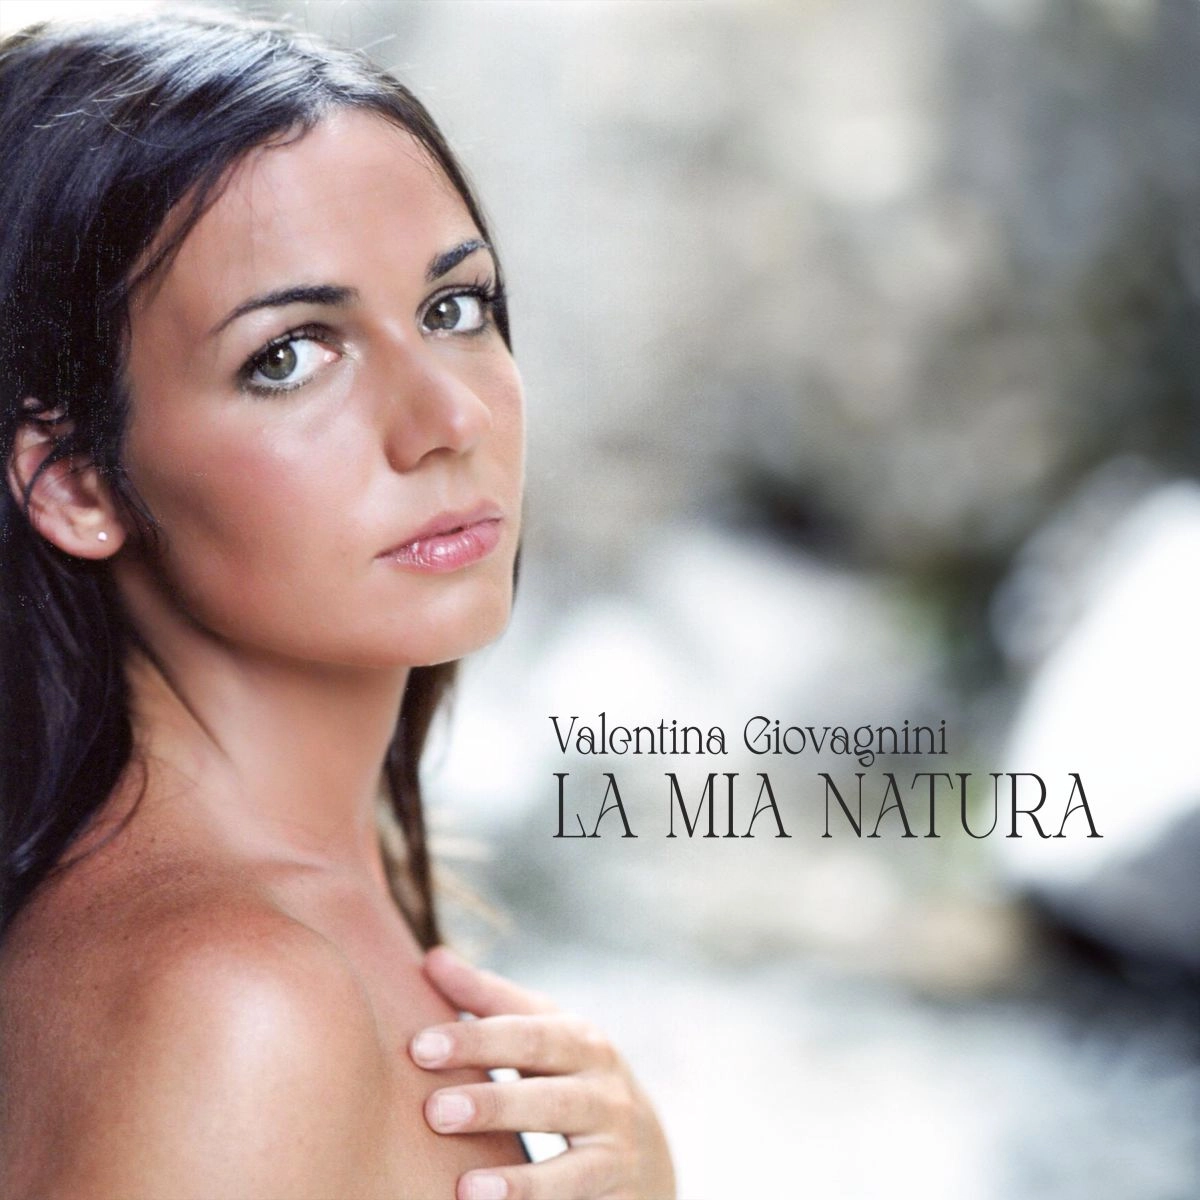 Valentina Giovagnini, la copertina de "La Mia Natura"